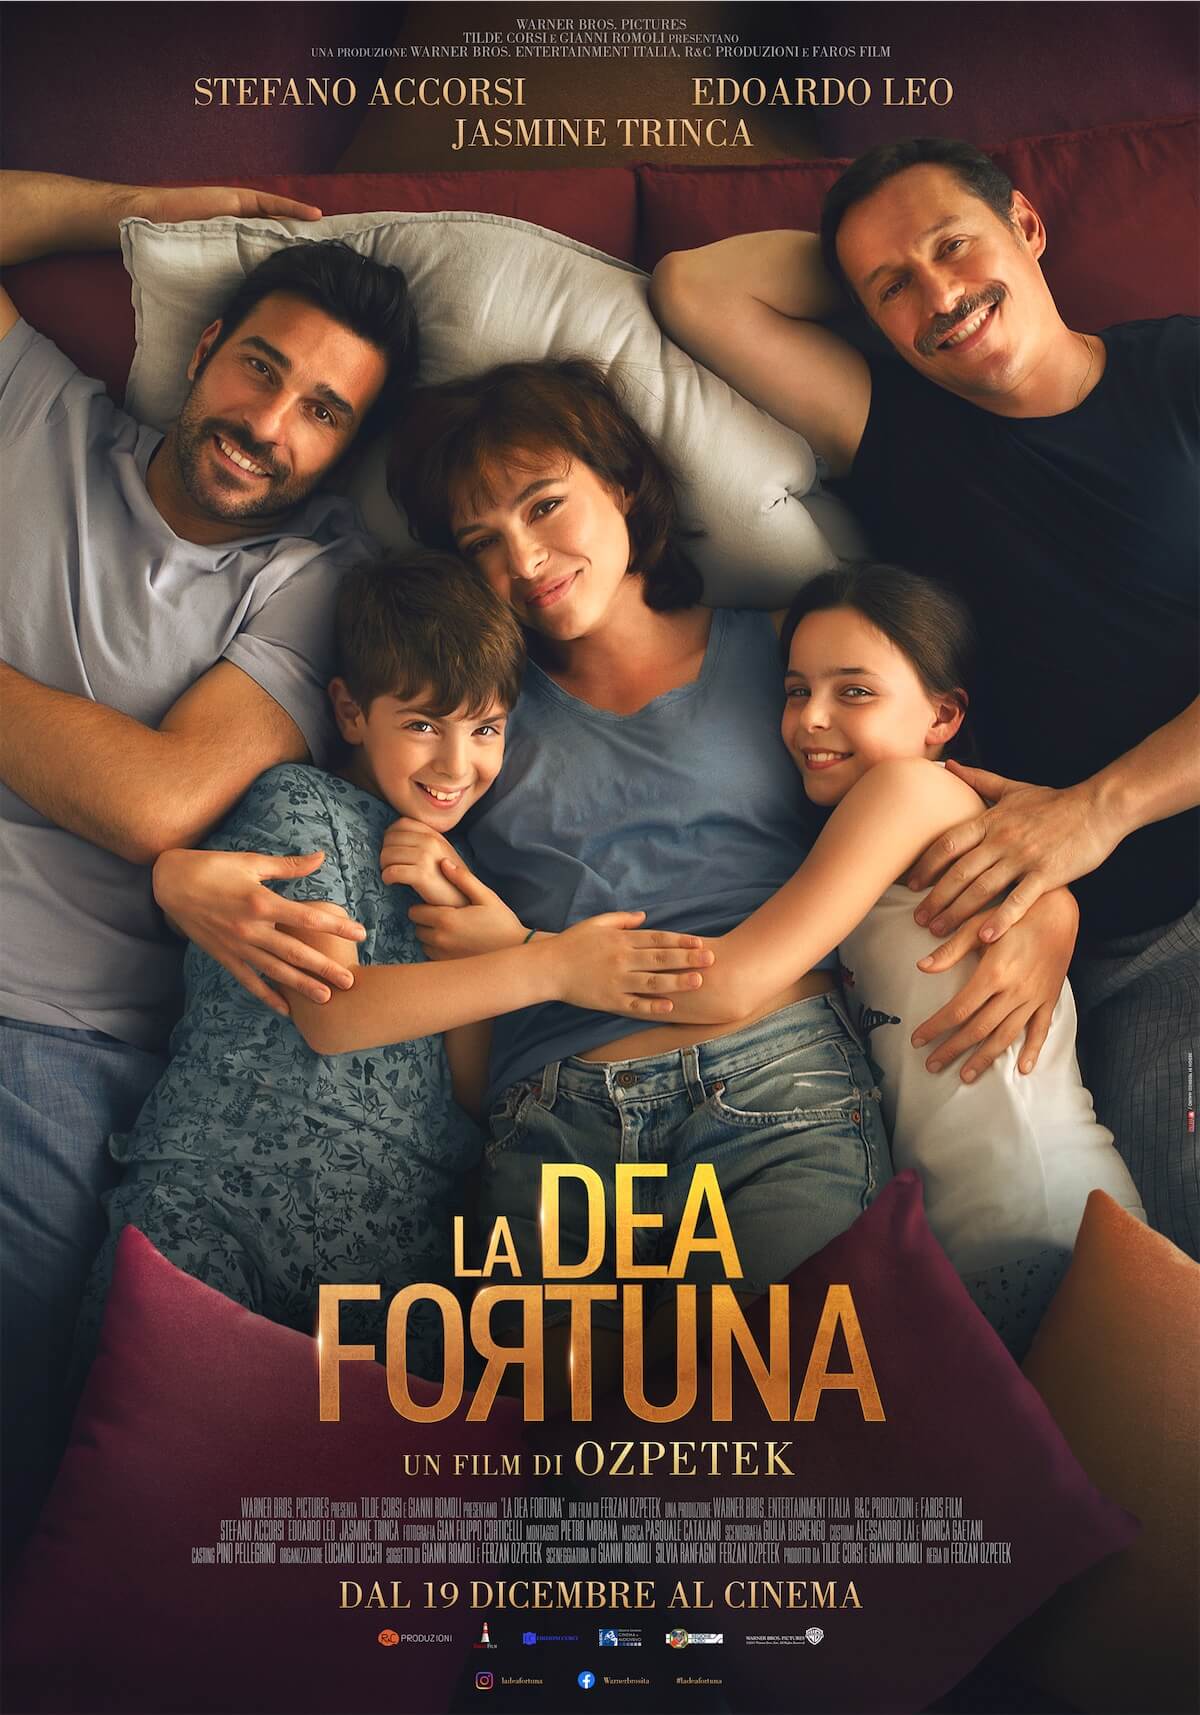 La Dea Fortuna di Ferzan Ozpetek, una famiglia arcobaleno nel primo poster - La Dea Fortuna di Ferzan Ozpetek - Gay.it